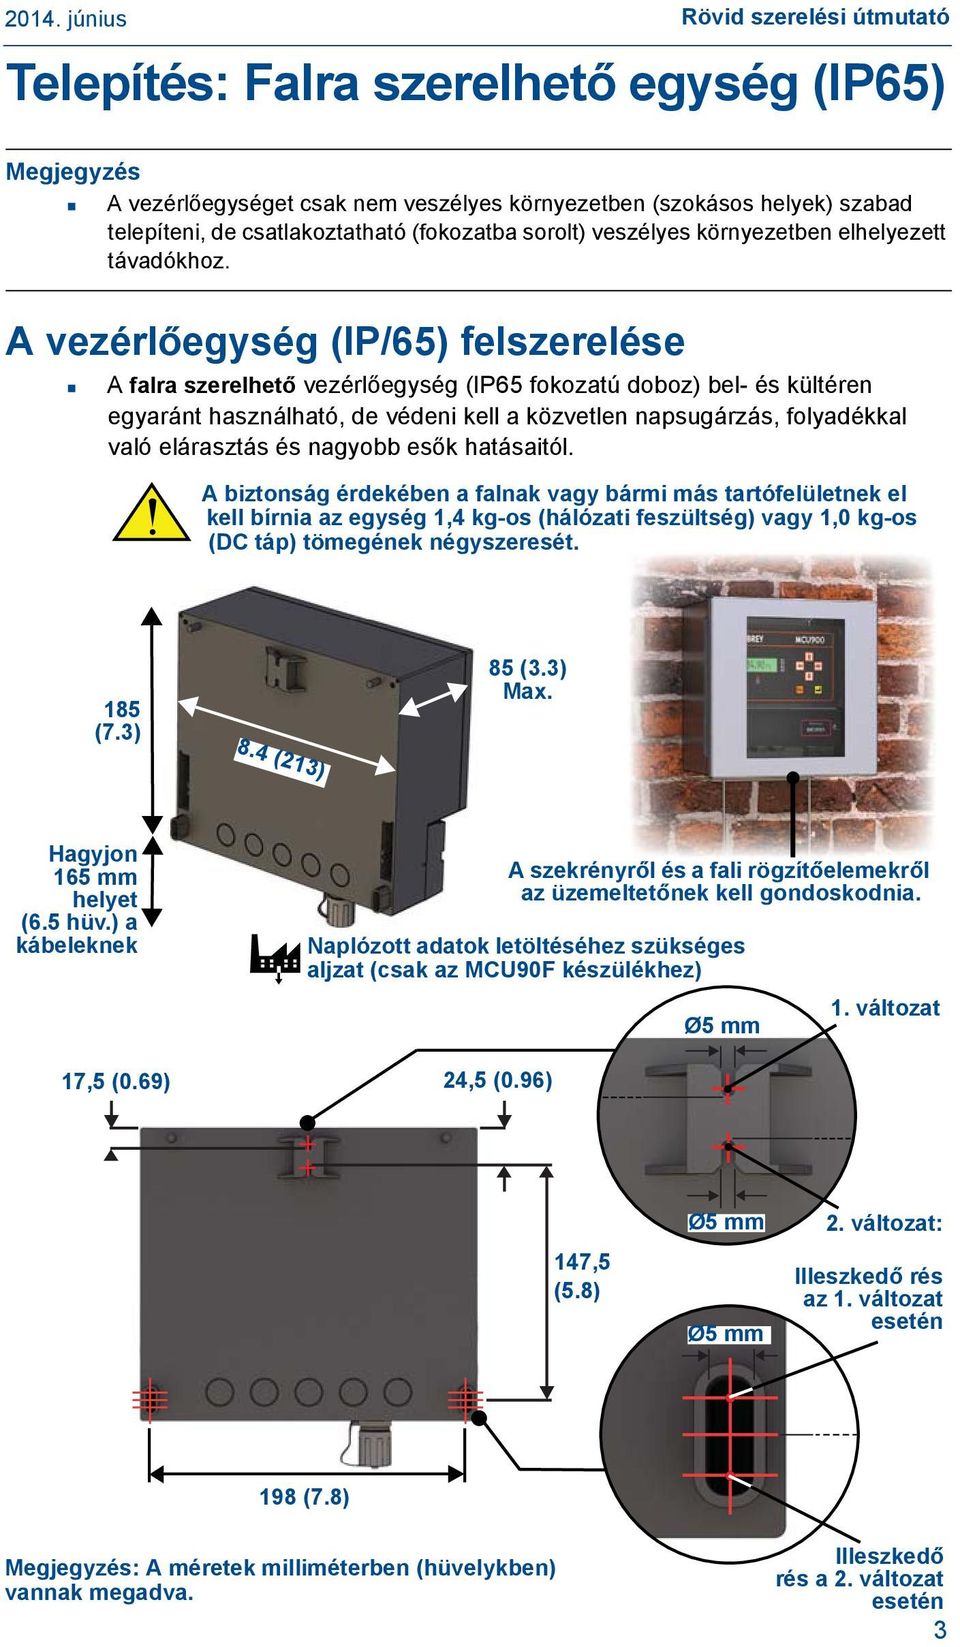 A vezérlőegység (IP/65) felszerelése A falra szerelhető vezérlőegység (IP65 fokozatú doboz) bel- és kültéren egyaránt használható, de védeni kell a közvetlen napsugárzás, folyadékkal való elárasztás